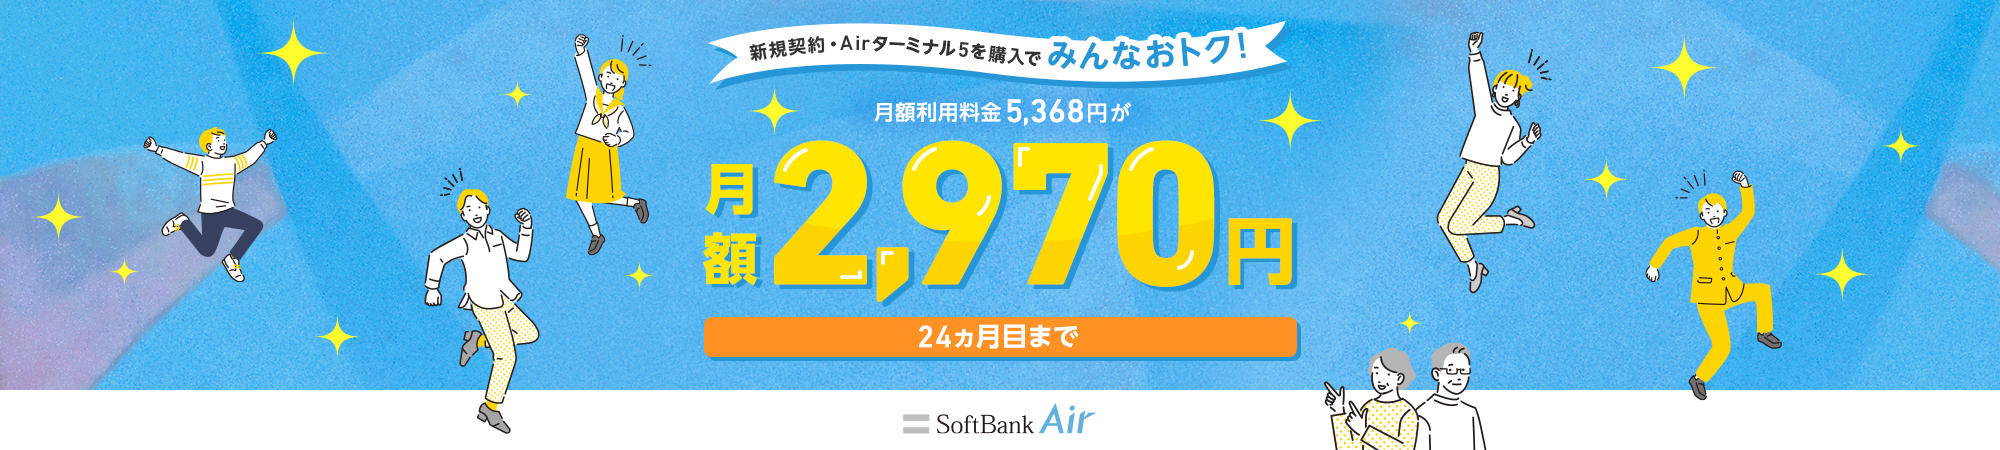 新規契約・Airターミナル5を購入でみんなおトク！ 月額利用料金5,368円が月額2,970円24ヵ月目まで SoftBank Air